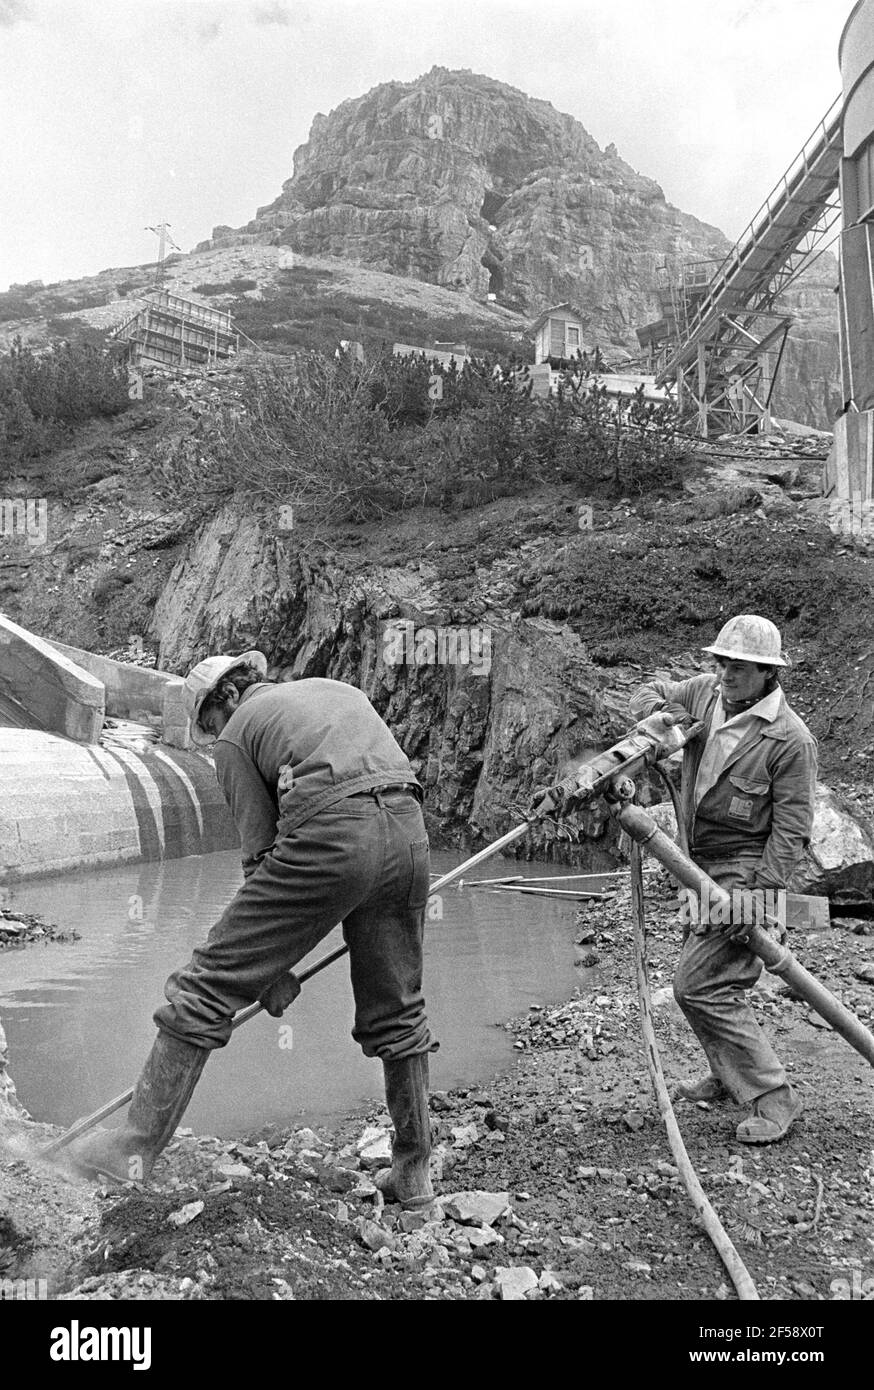 - construction site for the Braulio AEM hydroelectric power station (Valtellina, September 1983)   - Cantiere per la costruzione della centrale idroelettrica AEM del Braulio (Valtellina, Settembre 1983) Stock Photo